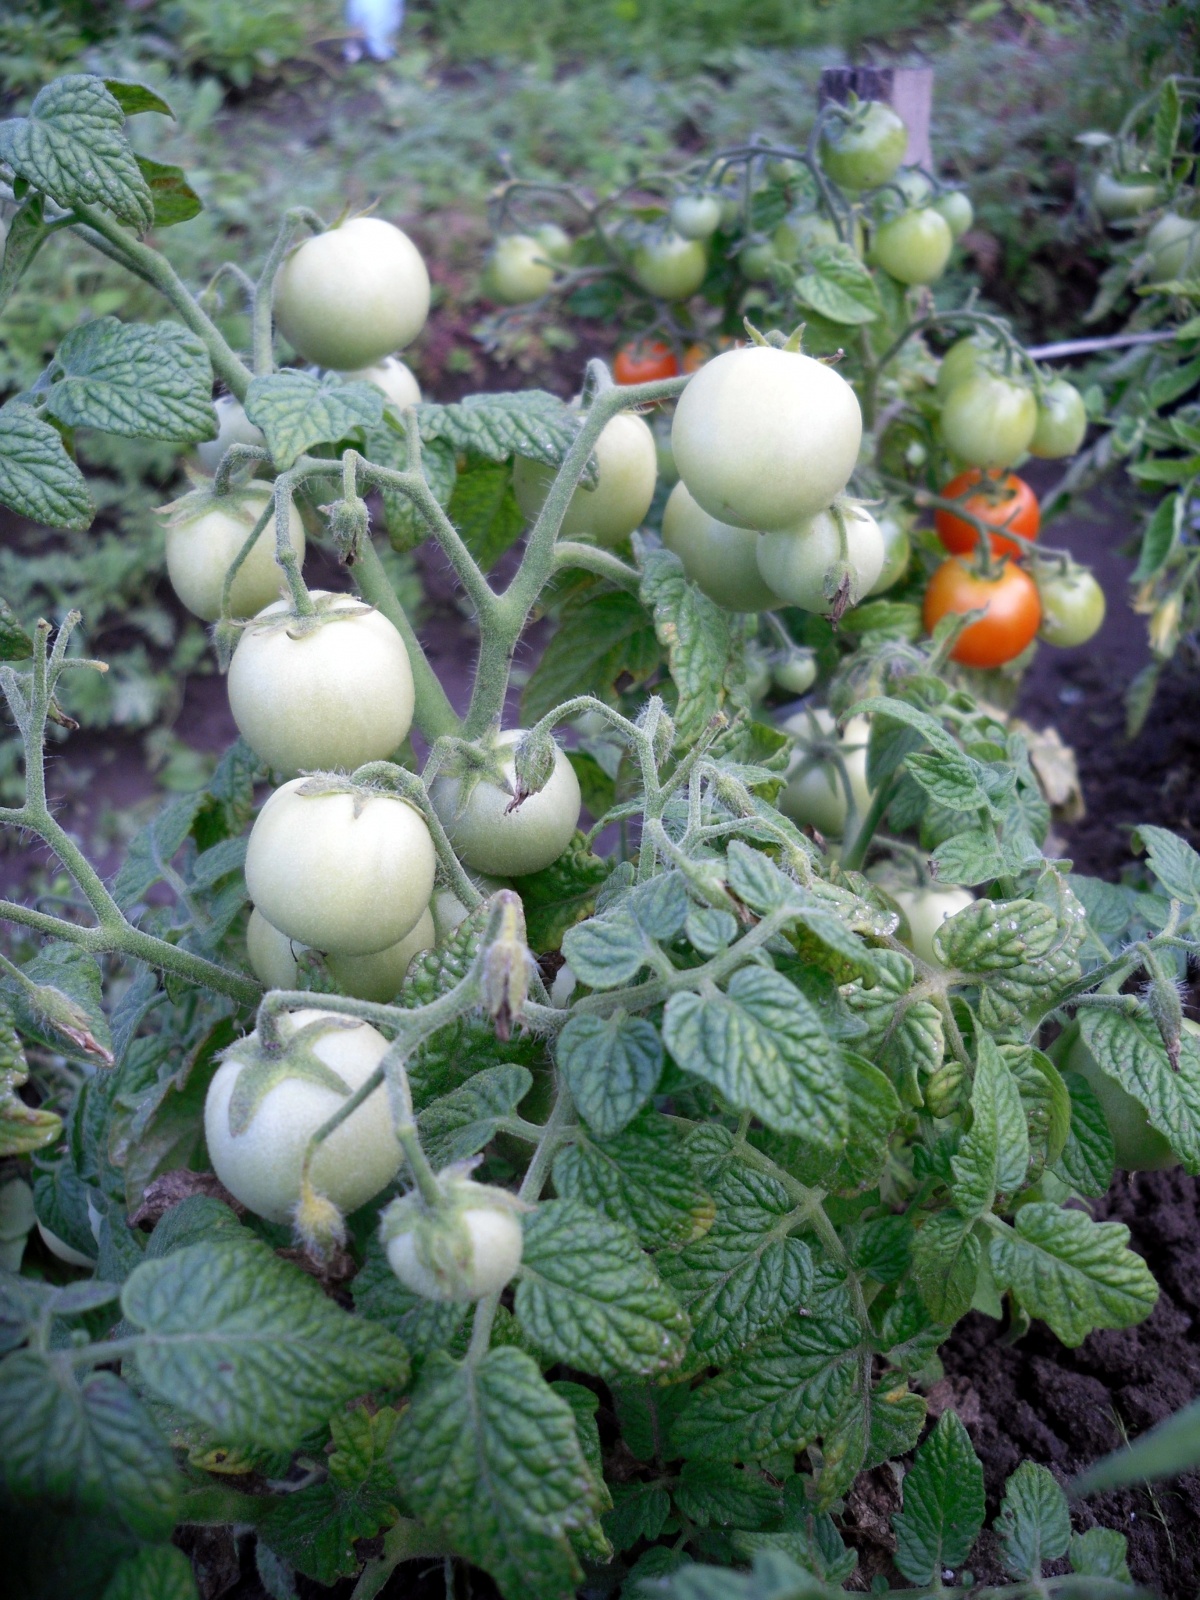 Семена помидоров лучшие сорта: посадка и уход